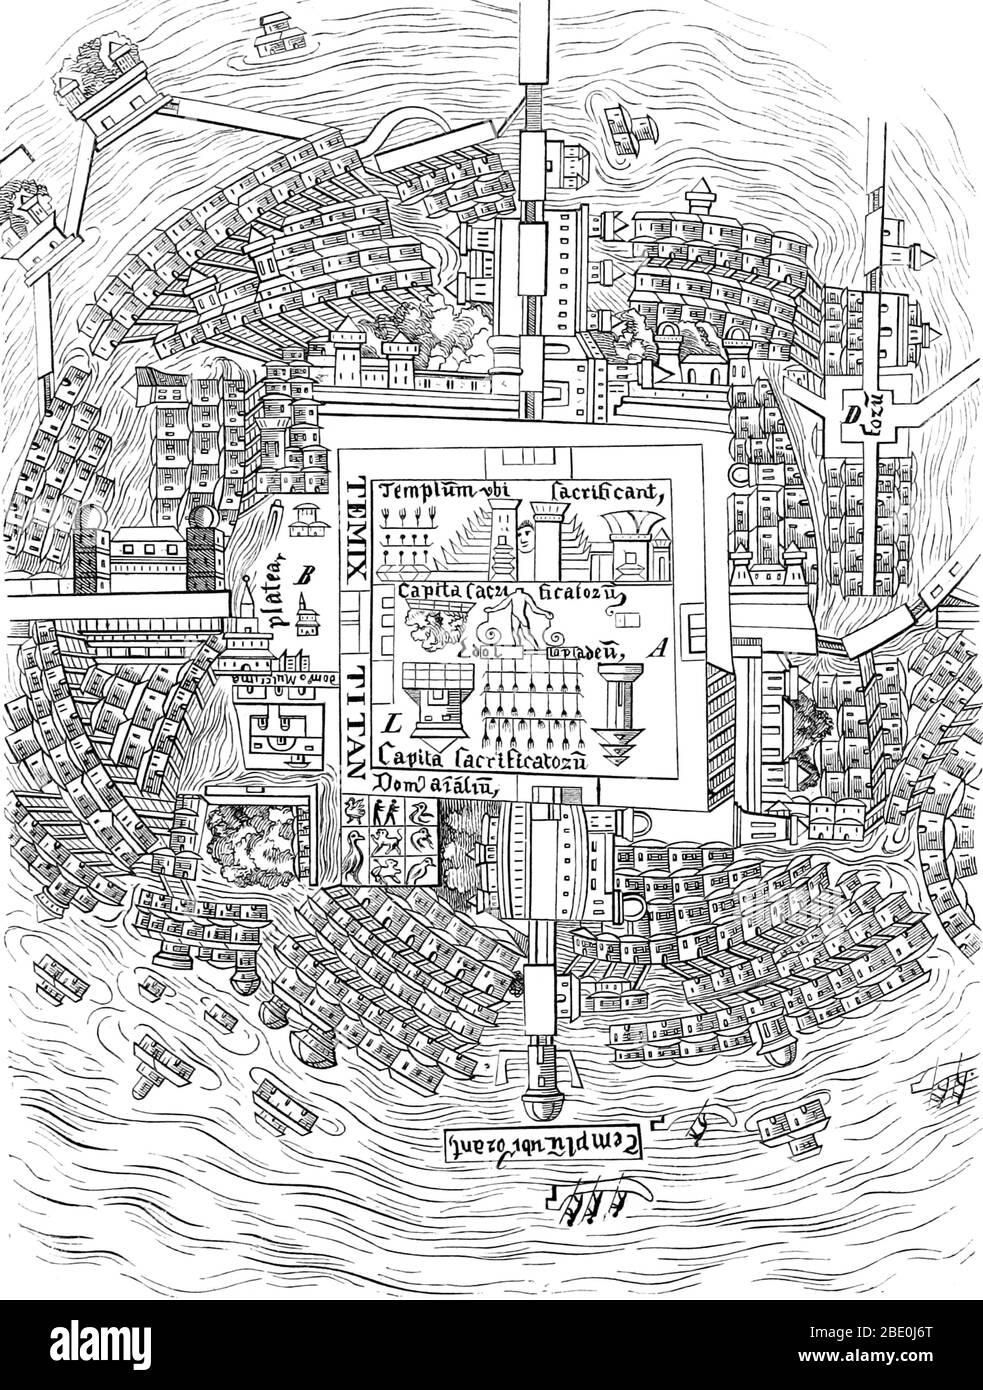 Mexico-Tenochtitlan, communément appelé Tenochtitlan, était un Aztec alteptol (ville-état) situé sur une île du lac de Tarcoco, dans la vallée du Mexique. Fondée en 1325, une culture florissante s'est développée et la civilisation mexicaine est venue dominer d'autres tribus autour du Mexique. La petite île naturelle a été perpétuellement agrandie à mesure que Tenochtitlan a grandi pour devenir la plus grande et la plus puissante ville de Mésoamerica. La ville était reliée au continent par des voies de causalité menant au nord, au sud et à l'ouest. Les voies de causalité ont été interrompues par des ponts qui ont permis aux canoës et à d'autres voies de circuler librement. Le pont Banque D'Images